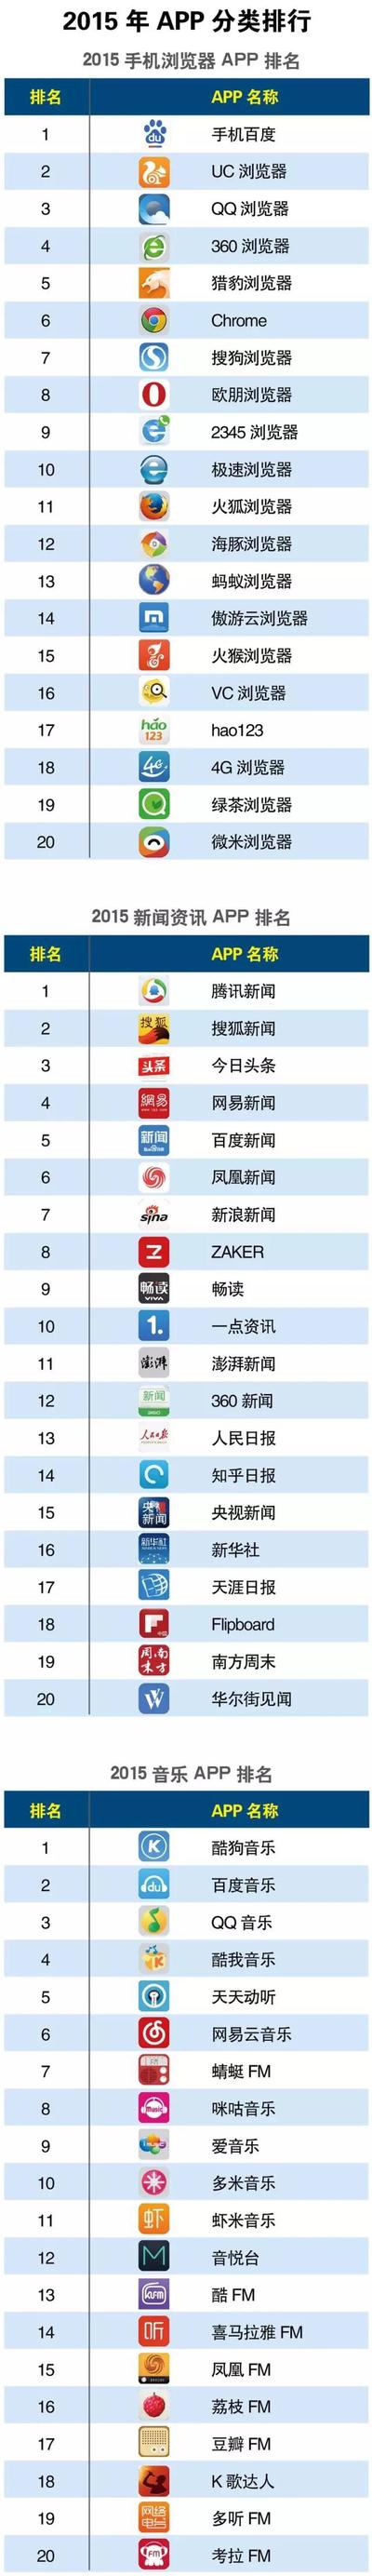 互联网周刊发布2015中国APP分类排行榜